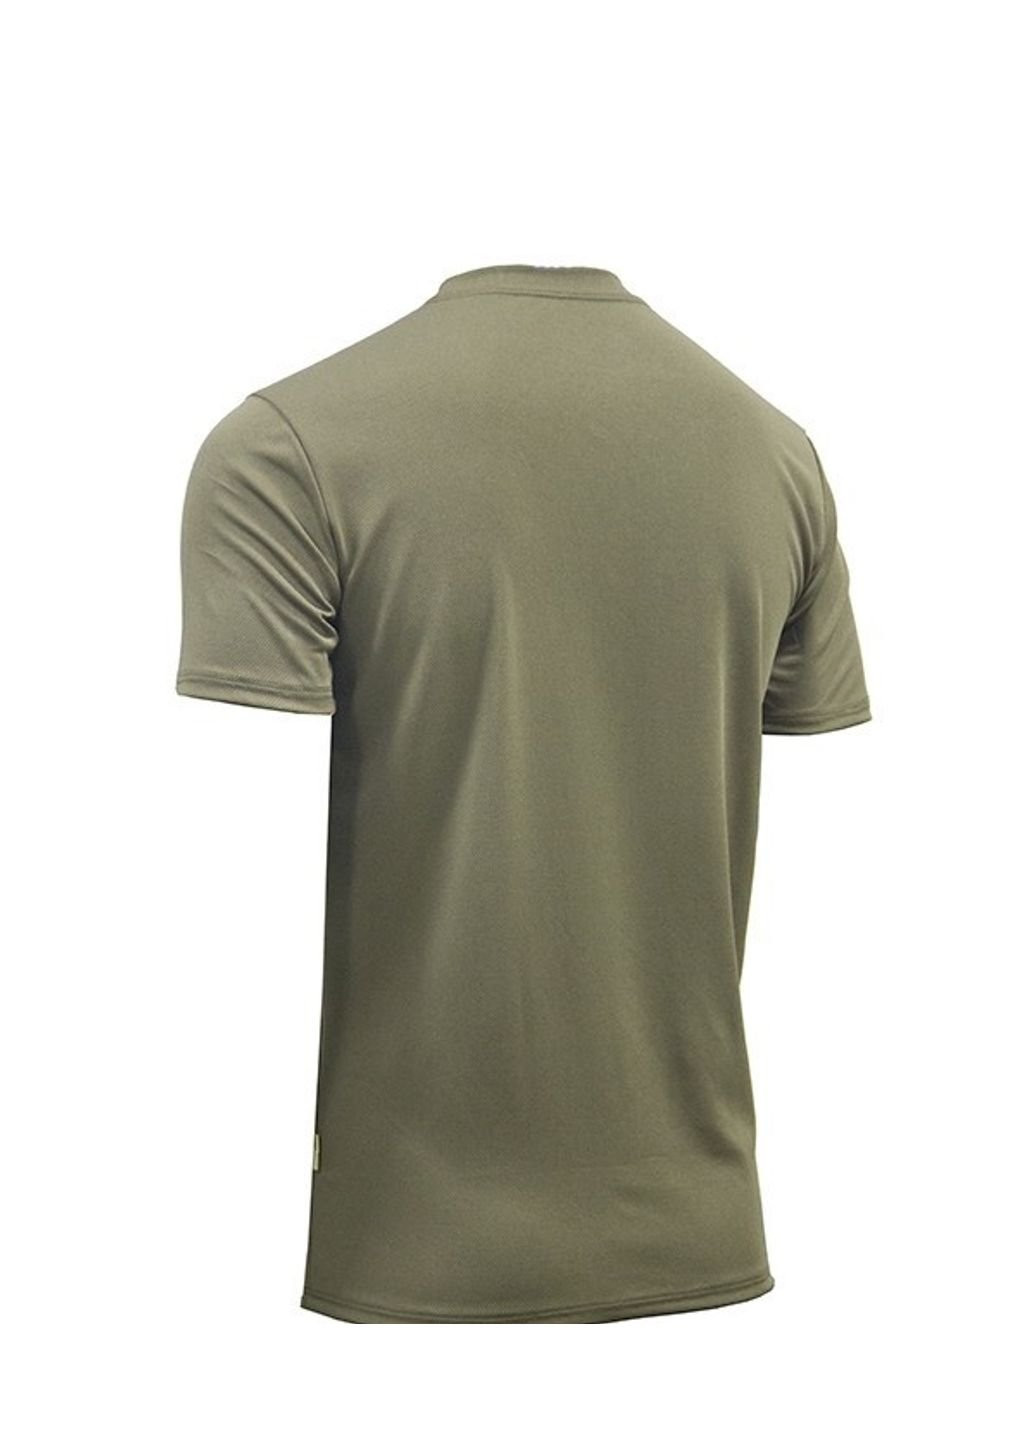 Хакі (оливкова) футболка чоловіча тактична потовідвідна кулмакс coolmax зсу s 6608 хакі No Brand